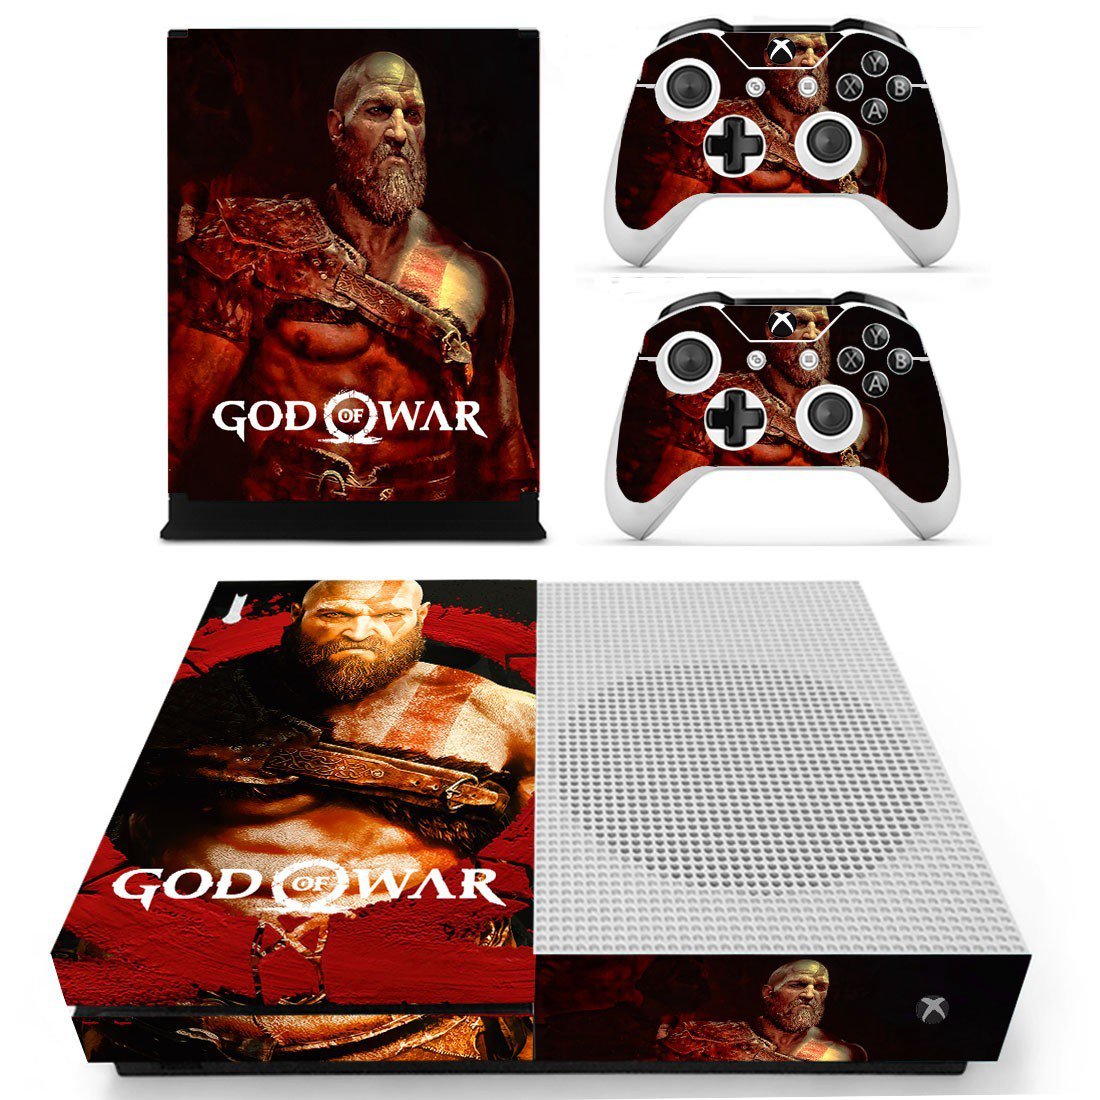 tragt fedme Elegance Xbox One S Skin Cover - God of War 4 - ConsoleSkins.co